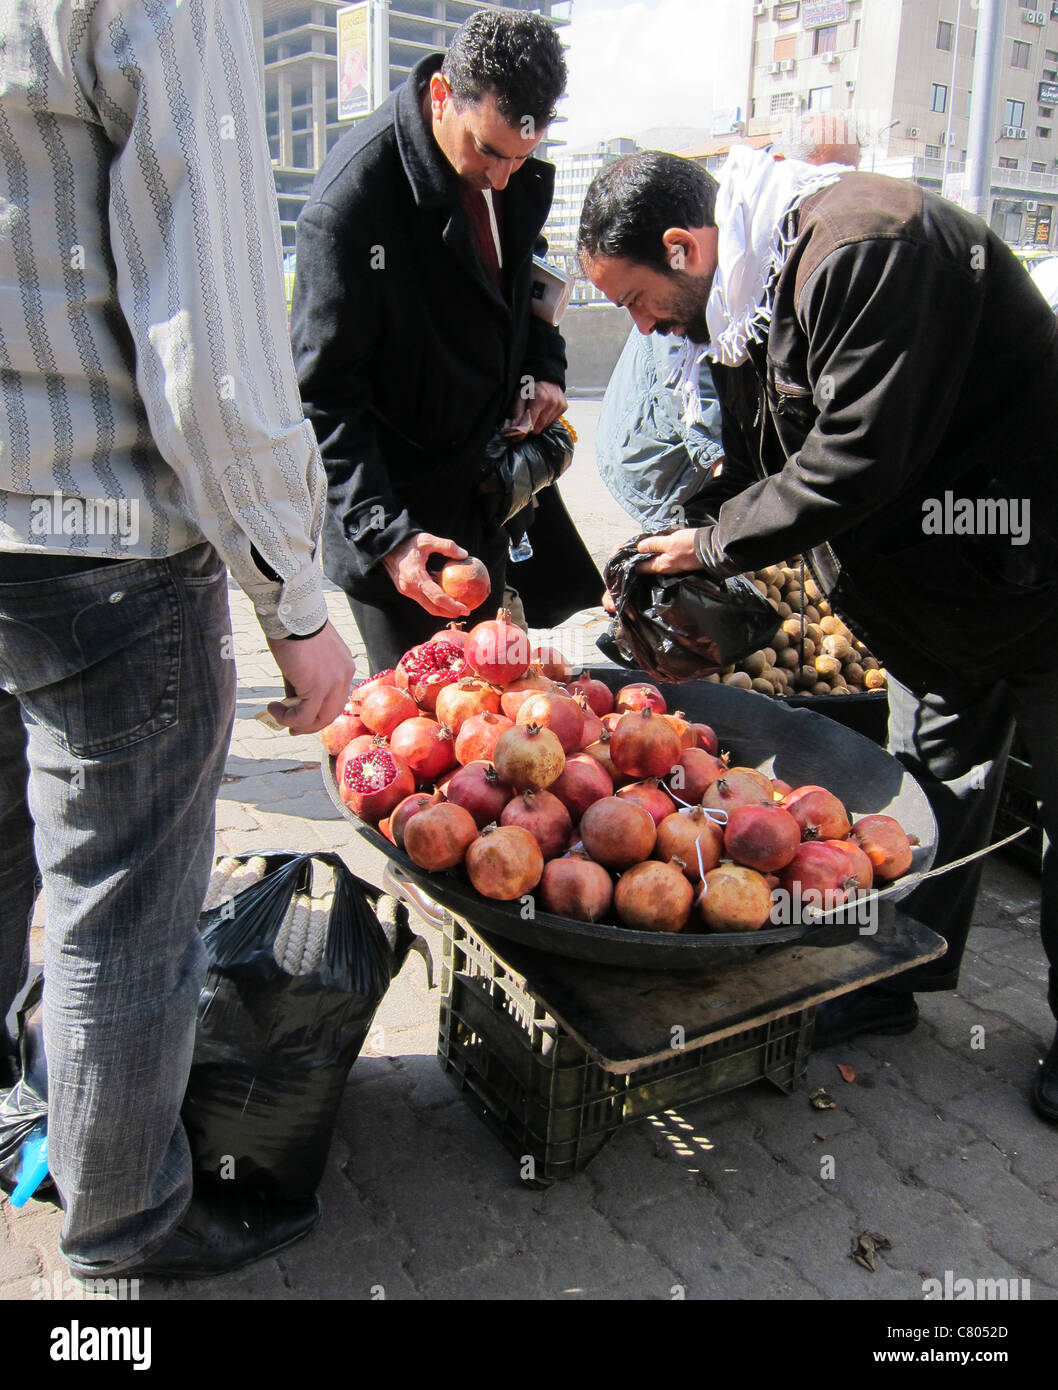 street saler  street vendor in Damascus, Strassenverkäufer in Damaskus Syrien Syria Granatapfel Frucht Früchte fruits Stock Photo